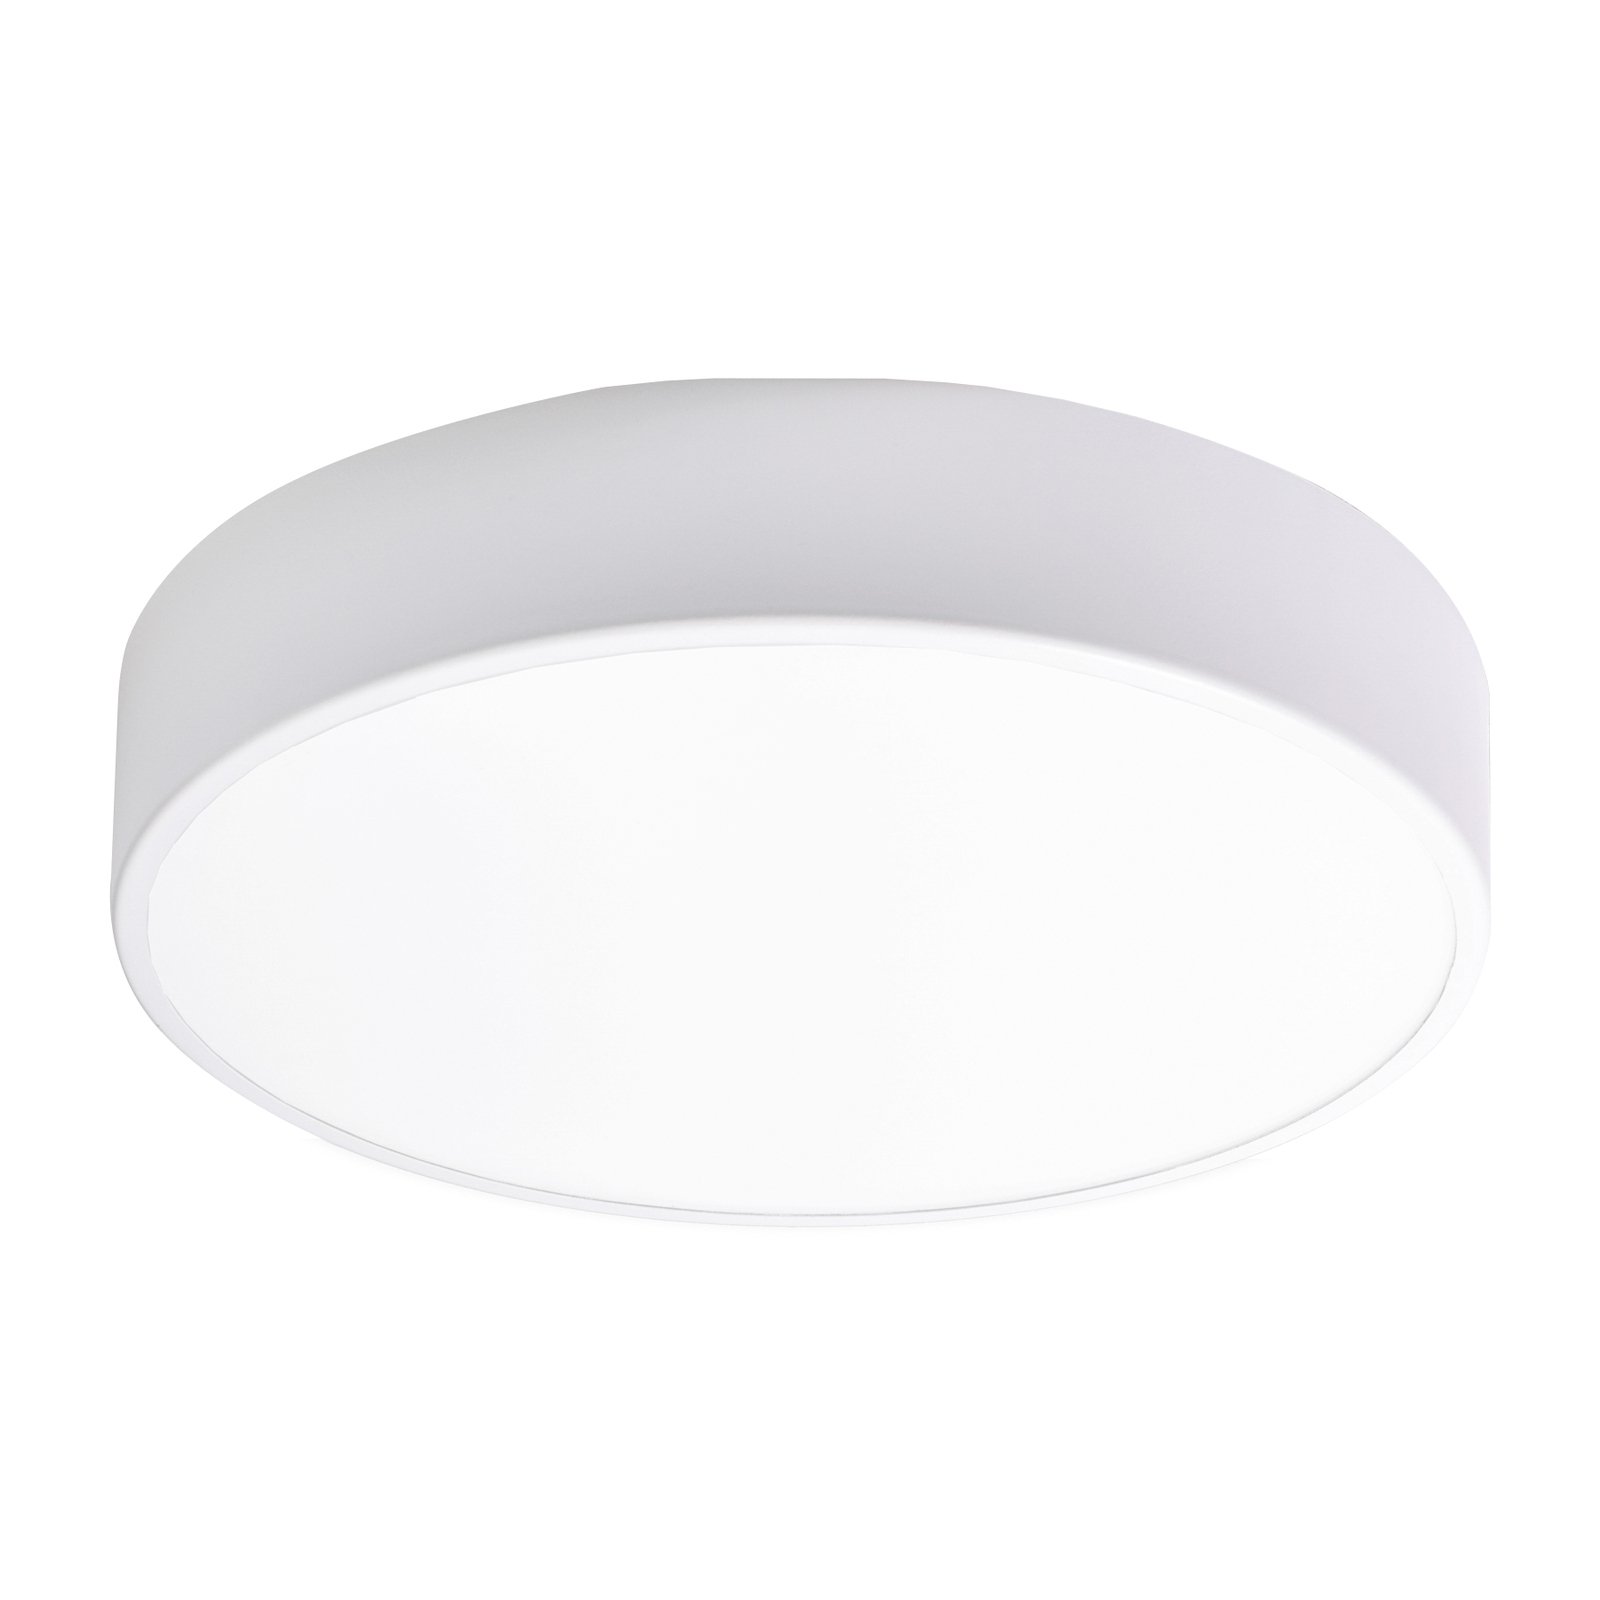 Cleo 400 ceiling light, IP54, Ø 40 cm white